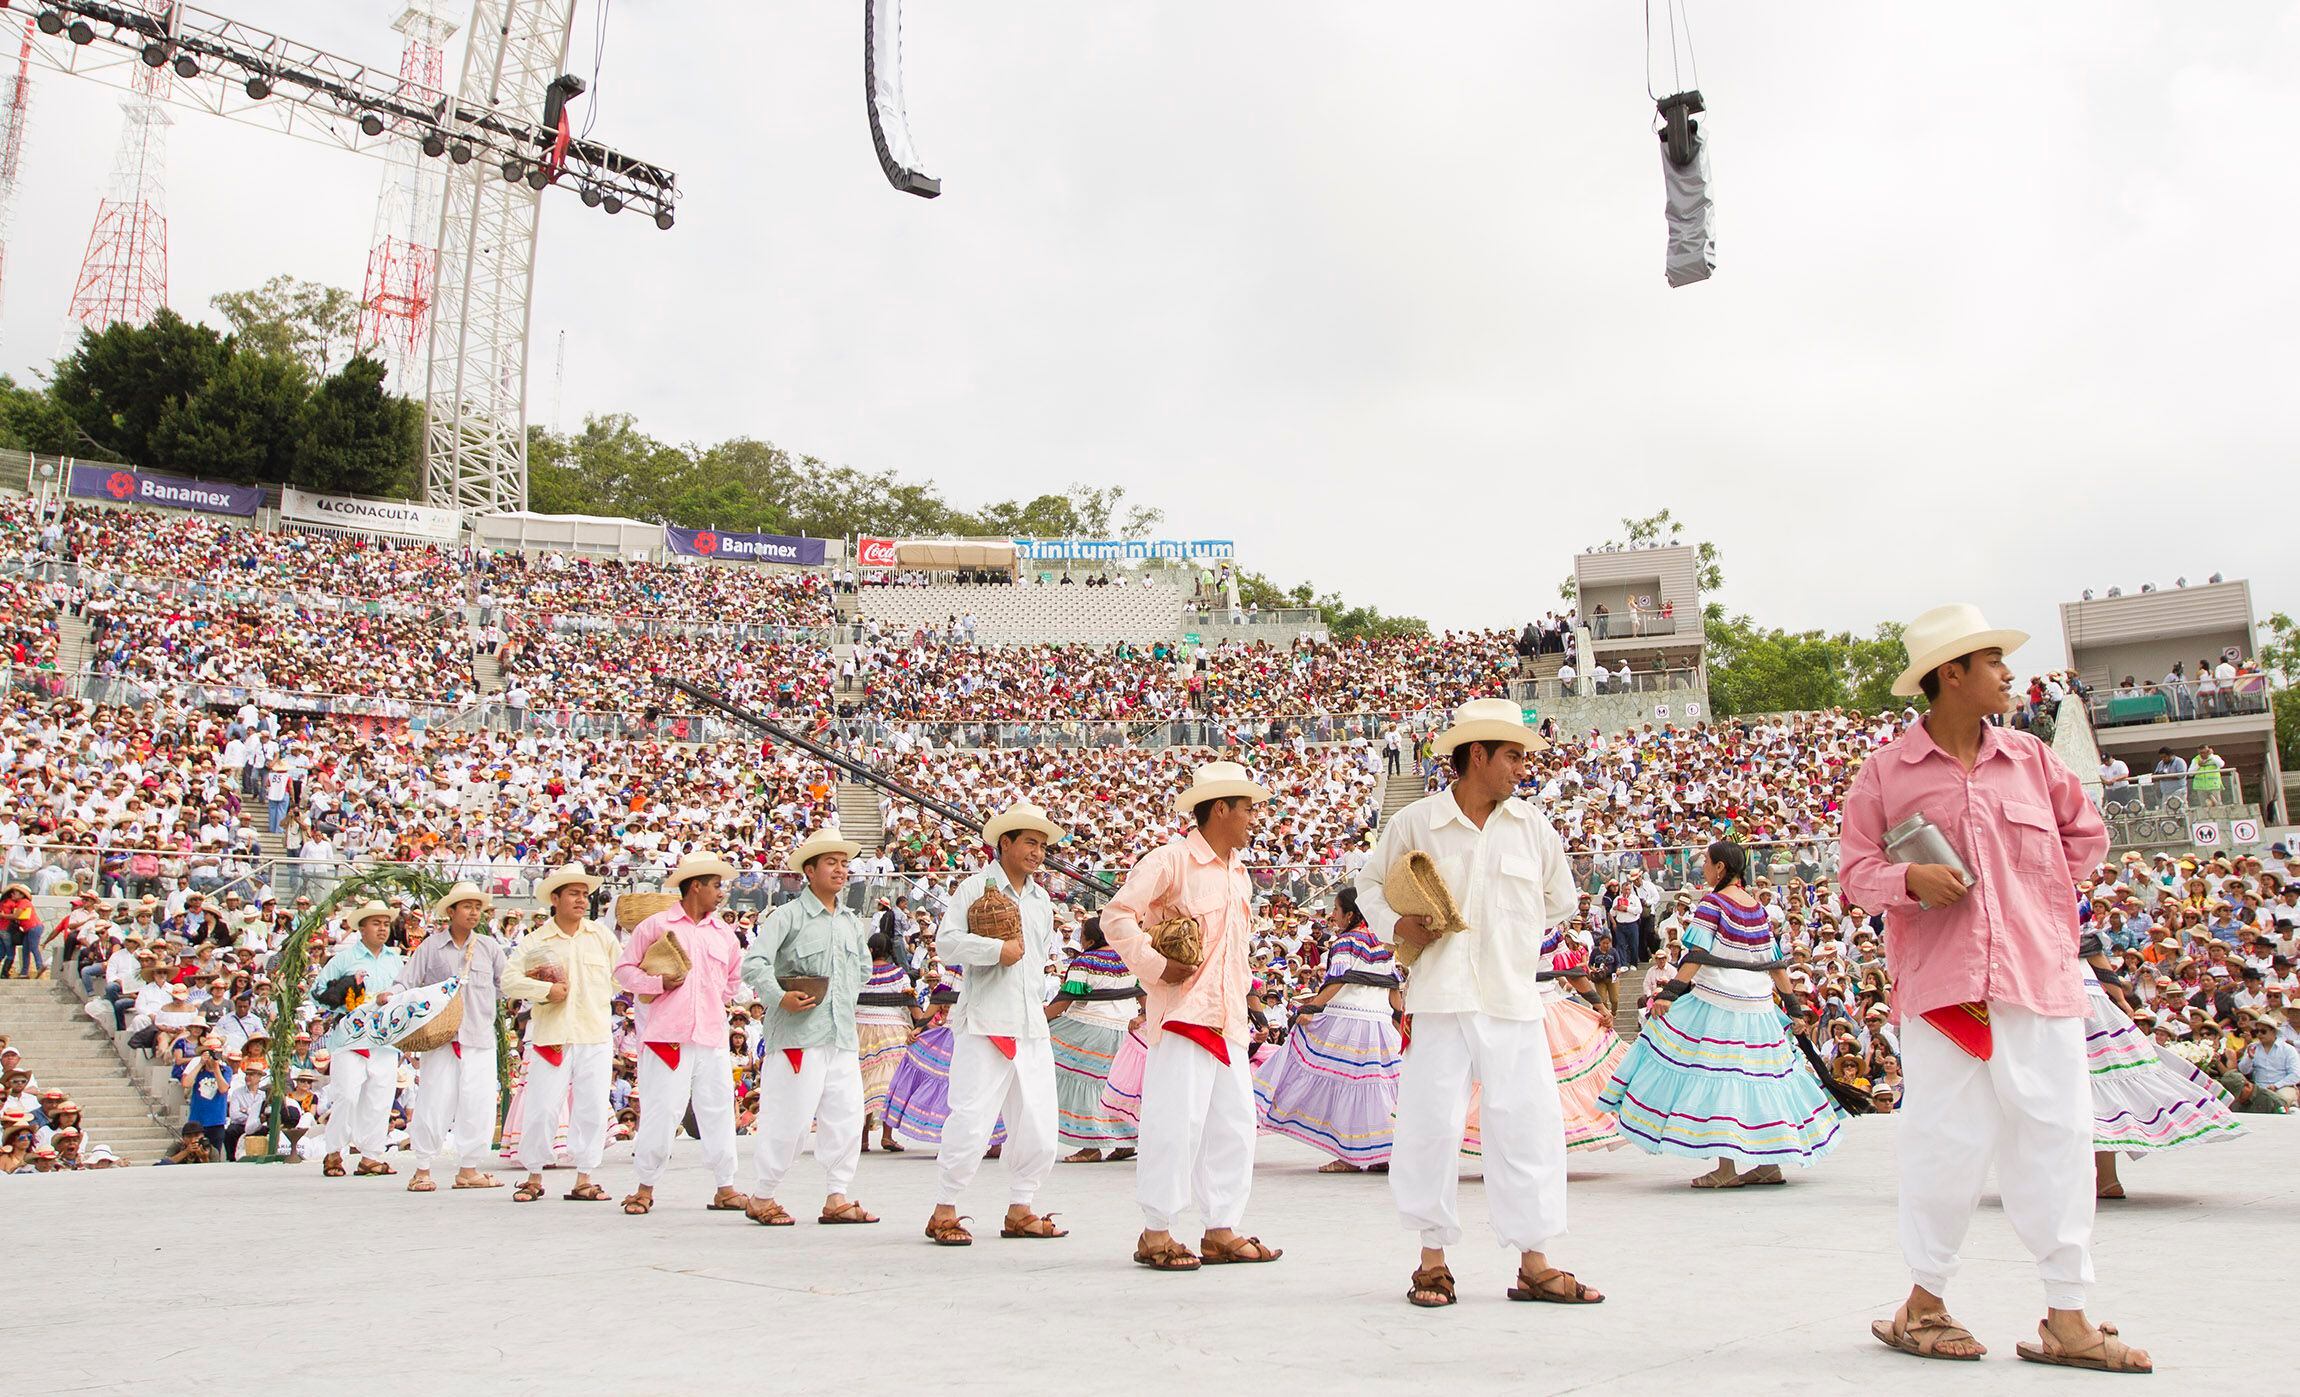 50720118. Oaxaca.- Con mucho orgullo los oaxaqueños participan en los bailes tradicionales del Primer Lunes del Cerro,  llenos de colorido y tradición, como parte de la Guelaguetza 2015.
NOTIMEX/FOTO/ISAIAS HERNANDEZ/IHH/ACE/